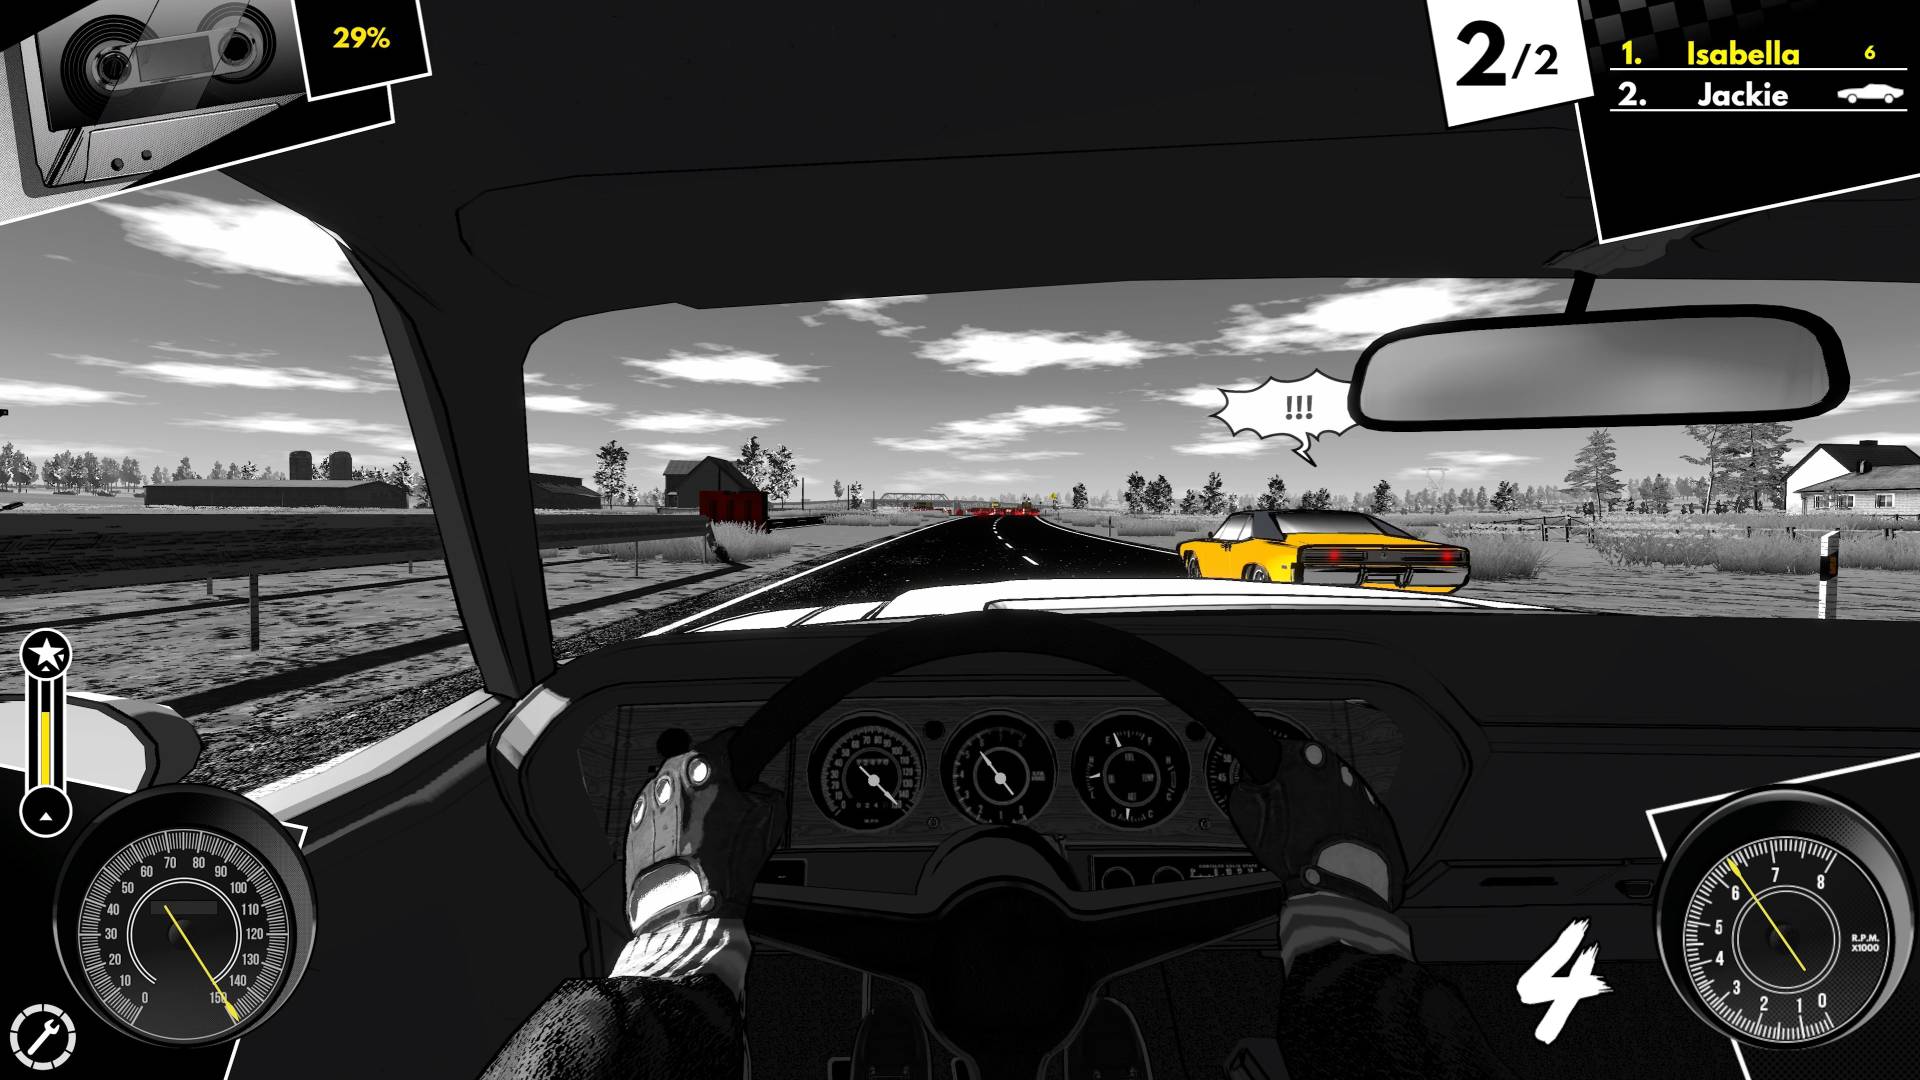 Il pilota ottiene un successore spirituale in questo nuovo gioco di corse Steam: un'auto in bianco e nero che corre contro un'auto gialla su una strada aperta in bianco e nero.